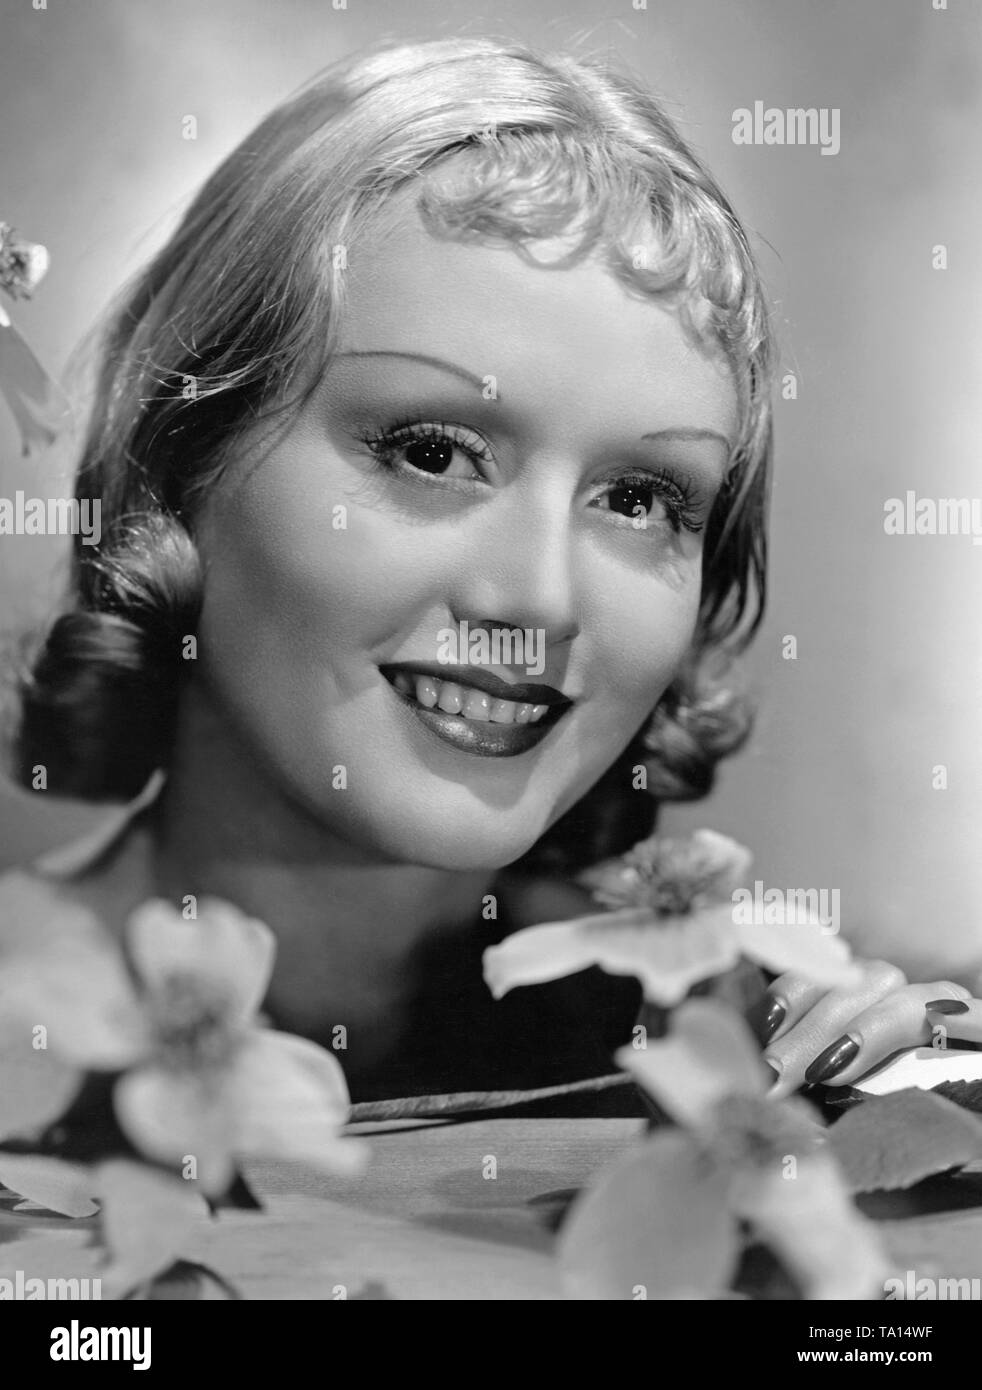 Porträt der österreichischen Schauspielerin Della Lind, auch als Grete Natzler bekannt. Ihr Styling entspricht dem Stil der 30er Jahre. Stockfoto